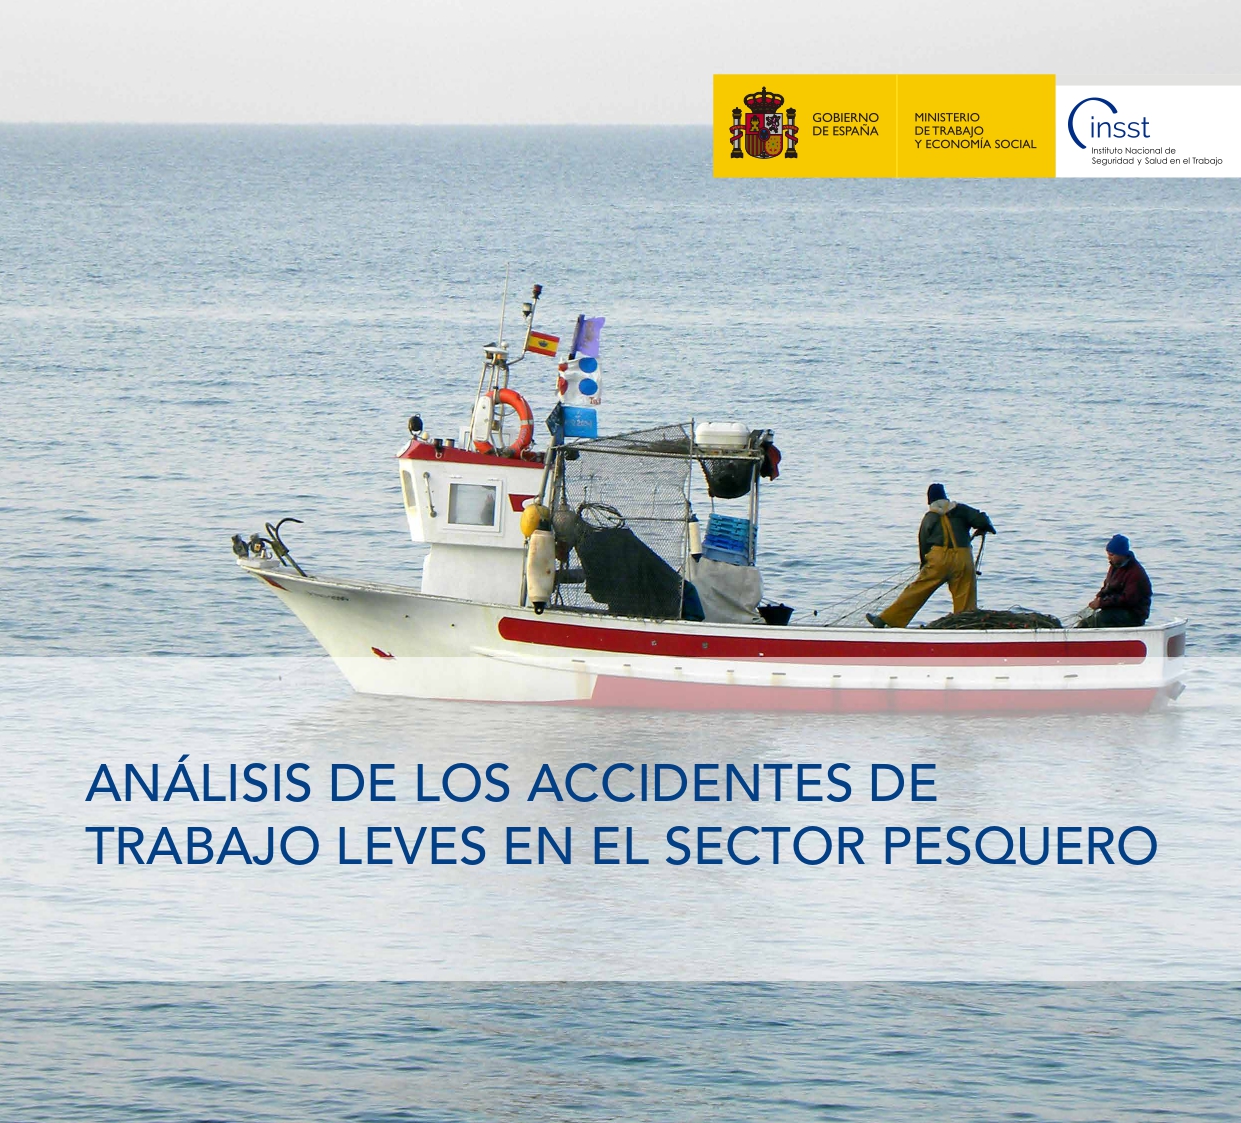 Imagen de la portada del documento con el título y un barco en medio del mar con pescadores trabajando